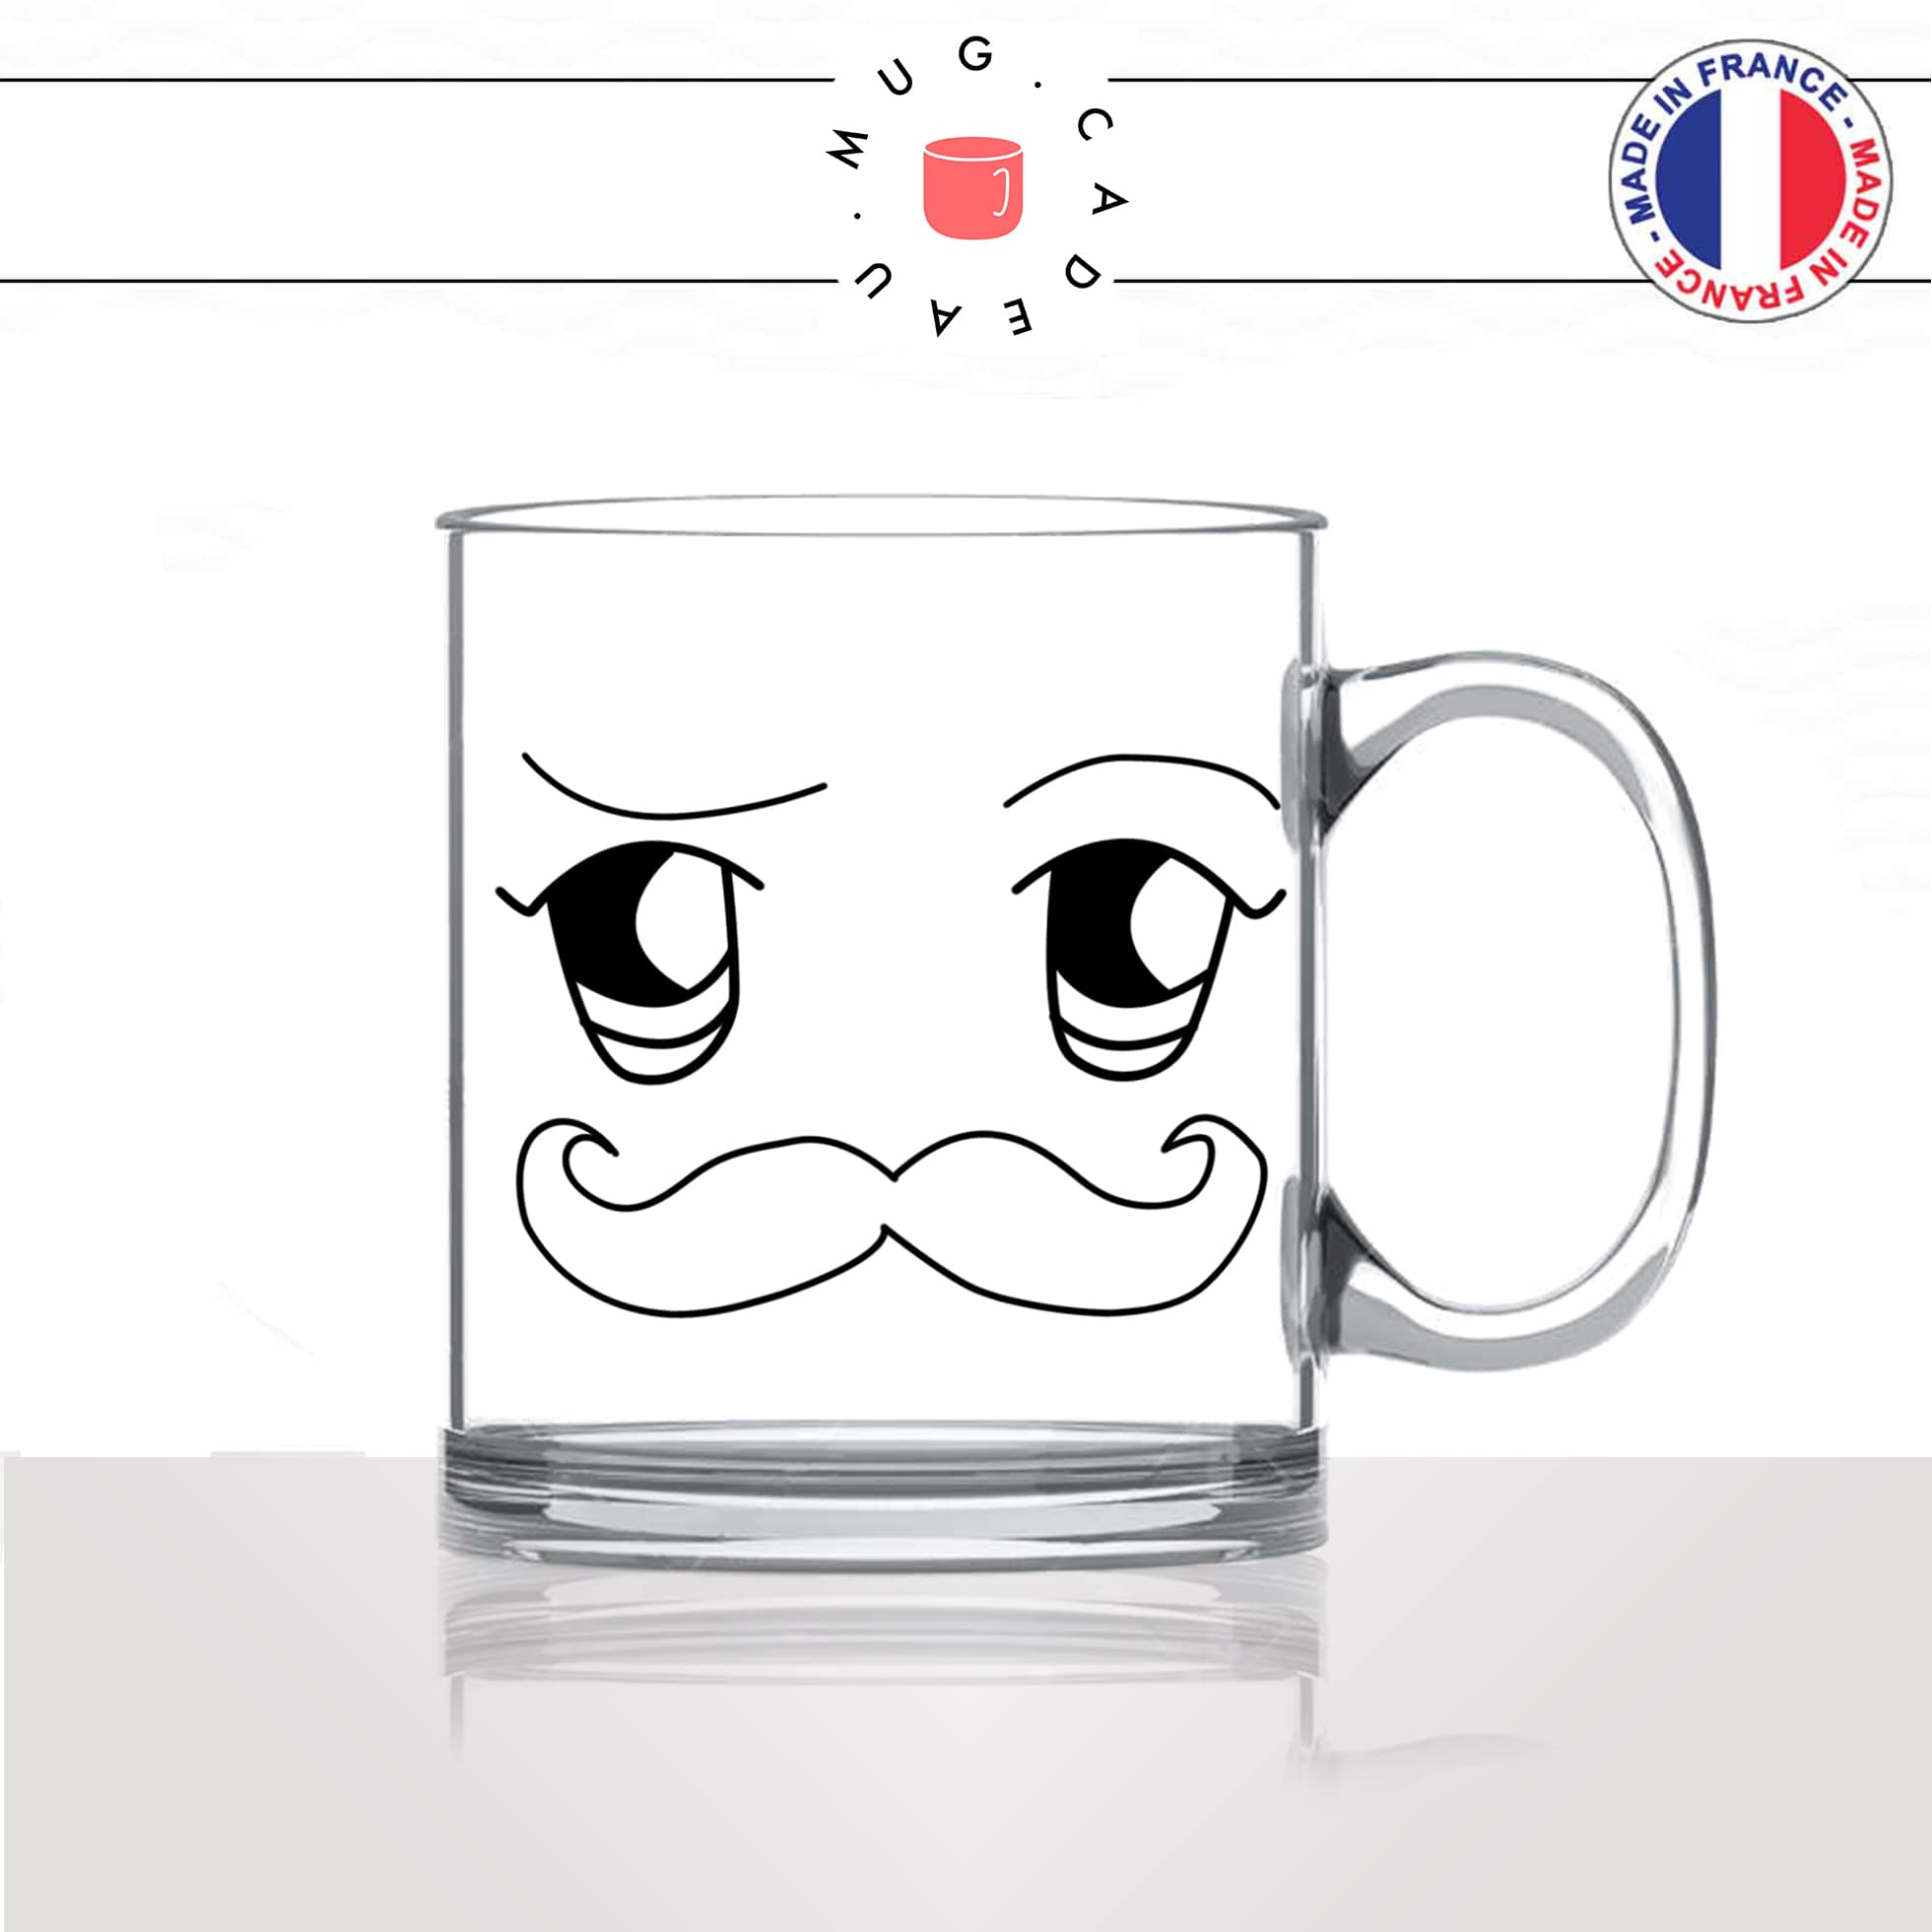 tasse-mug-en-verre-transparent-glass-moustache-homme-kawaii-dessin-mignon-animal-noir-fun-café-thé-idée-cadeau-original-personnalisé2-min